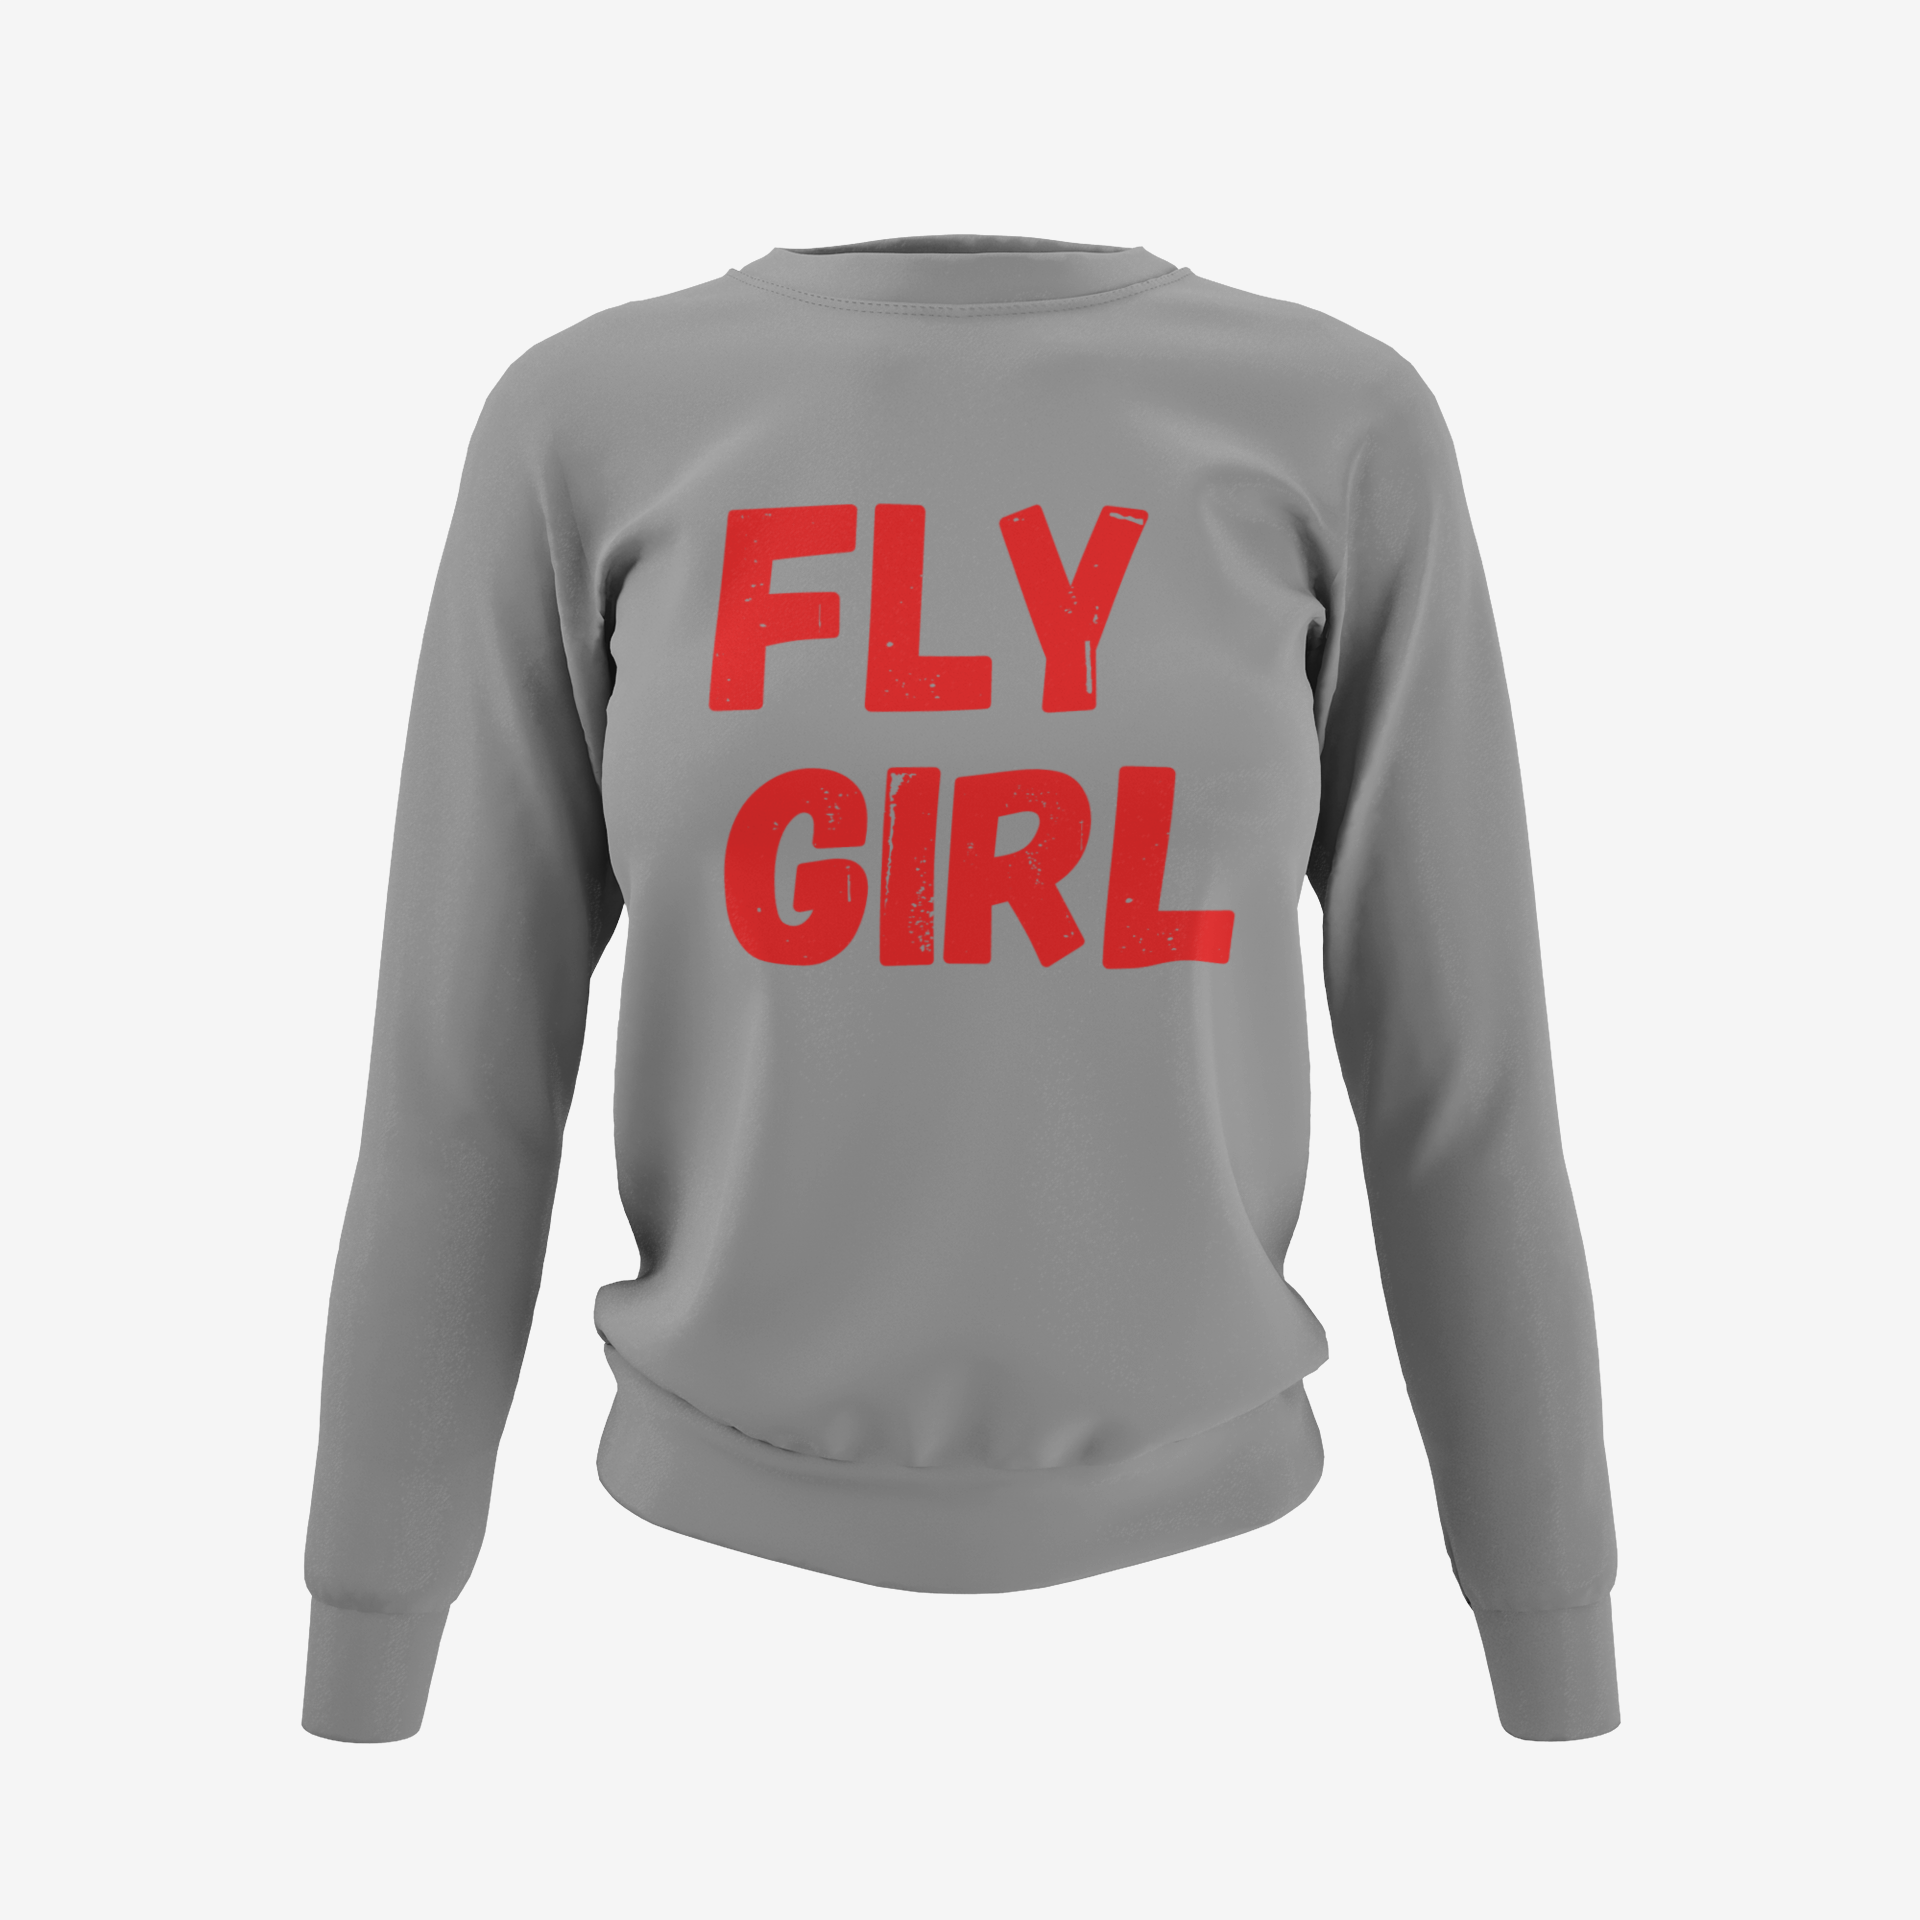 Fly Girl Sweatshirt